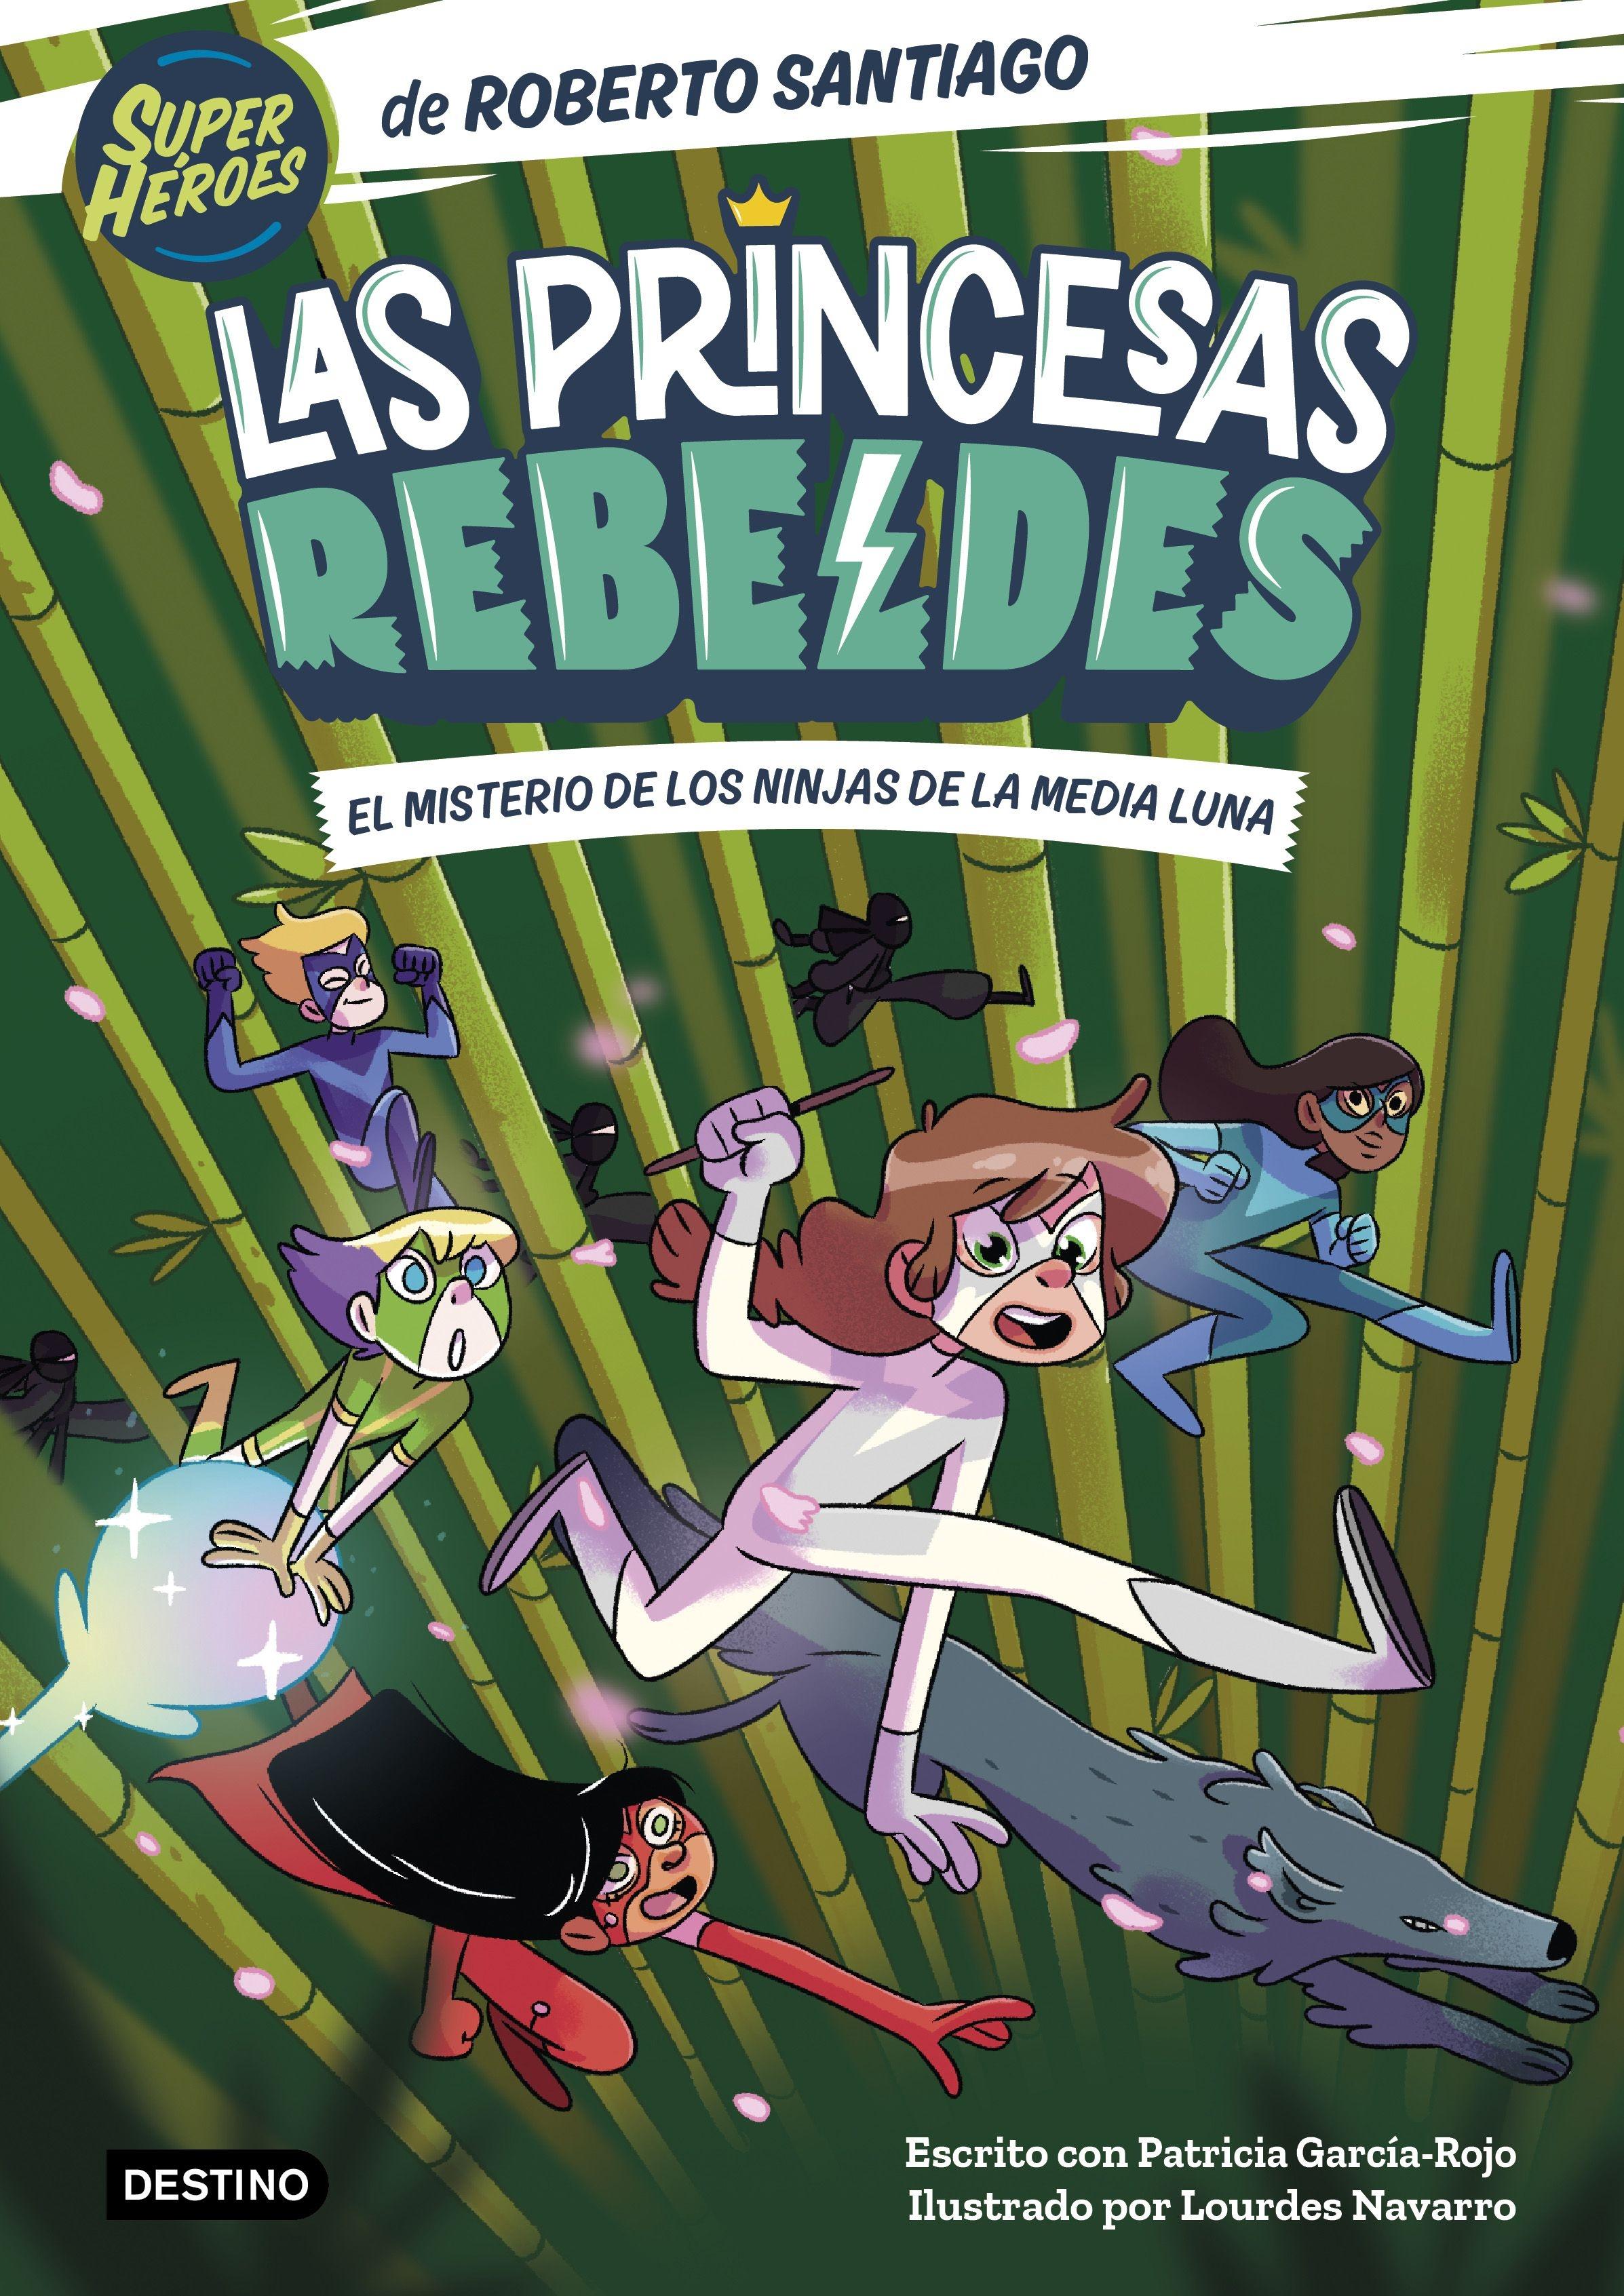 Las Princesas Rebeldes 3 "El Misterio de los Ninjas de la Media Luna". 